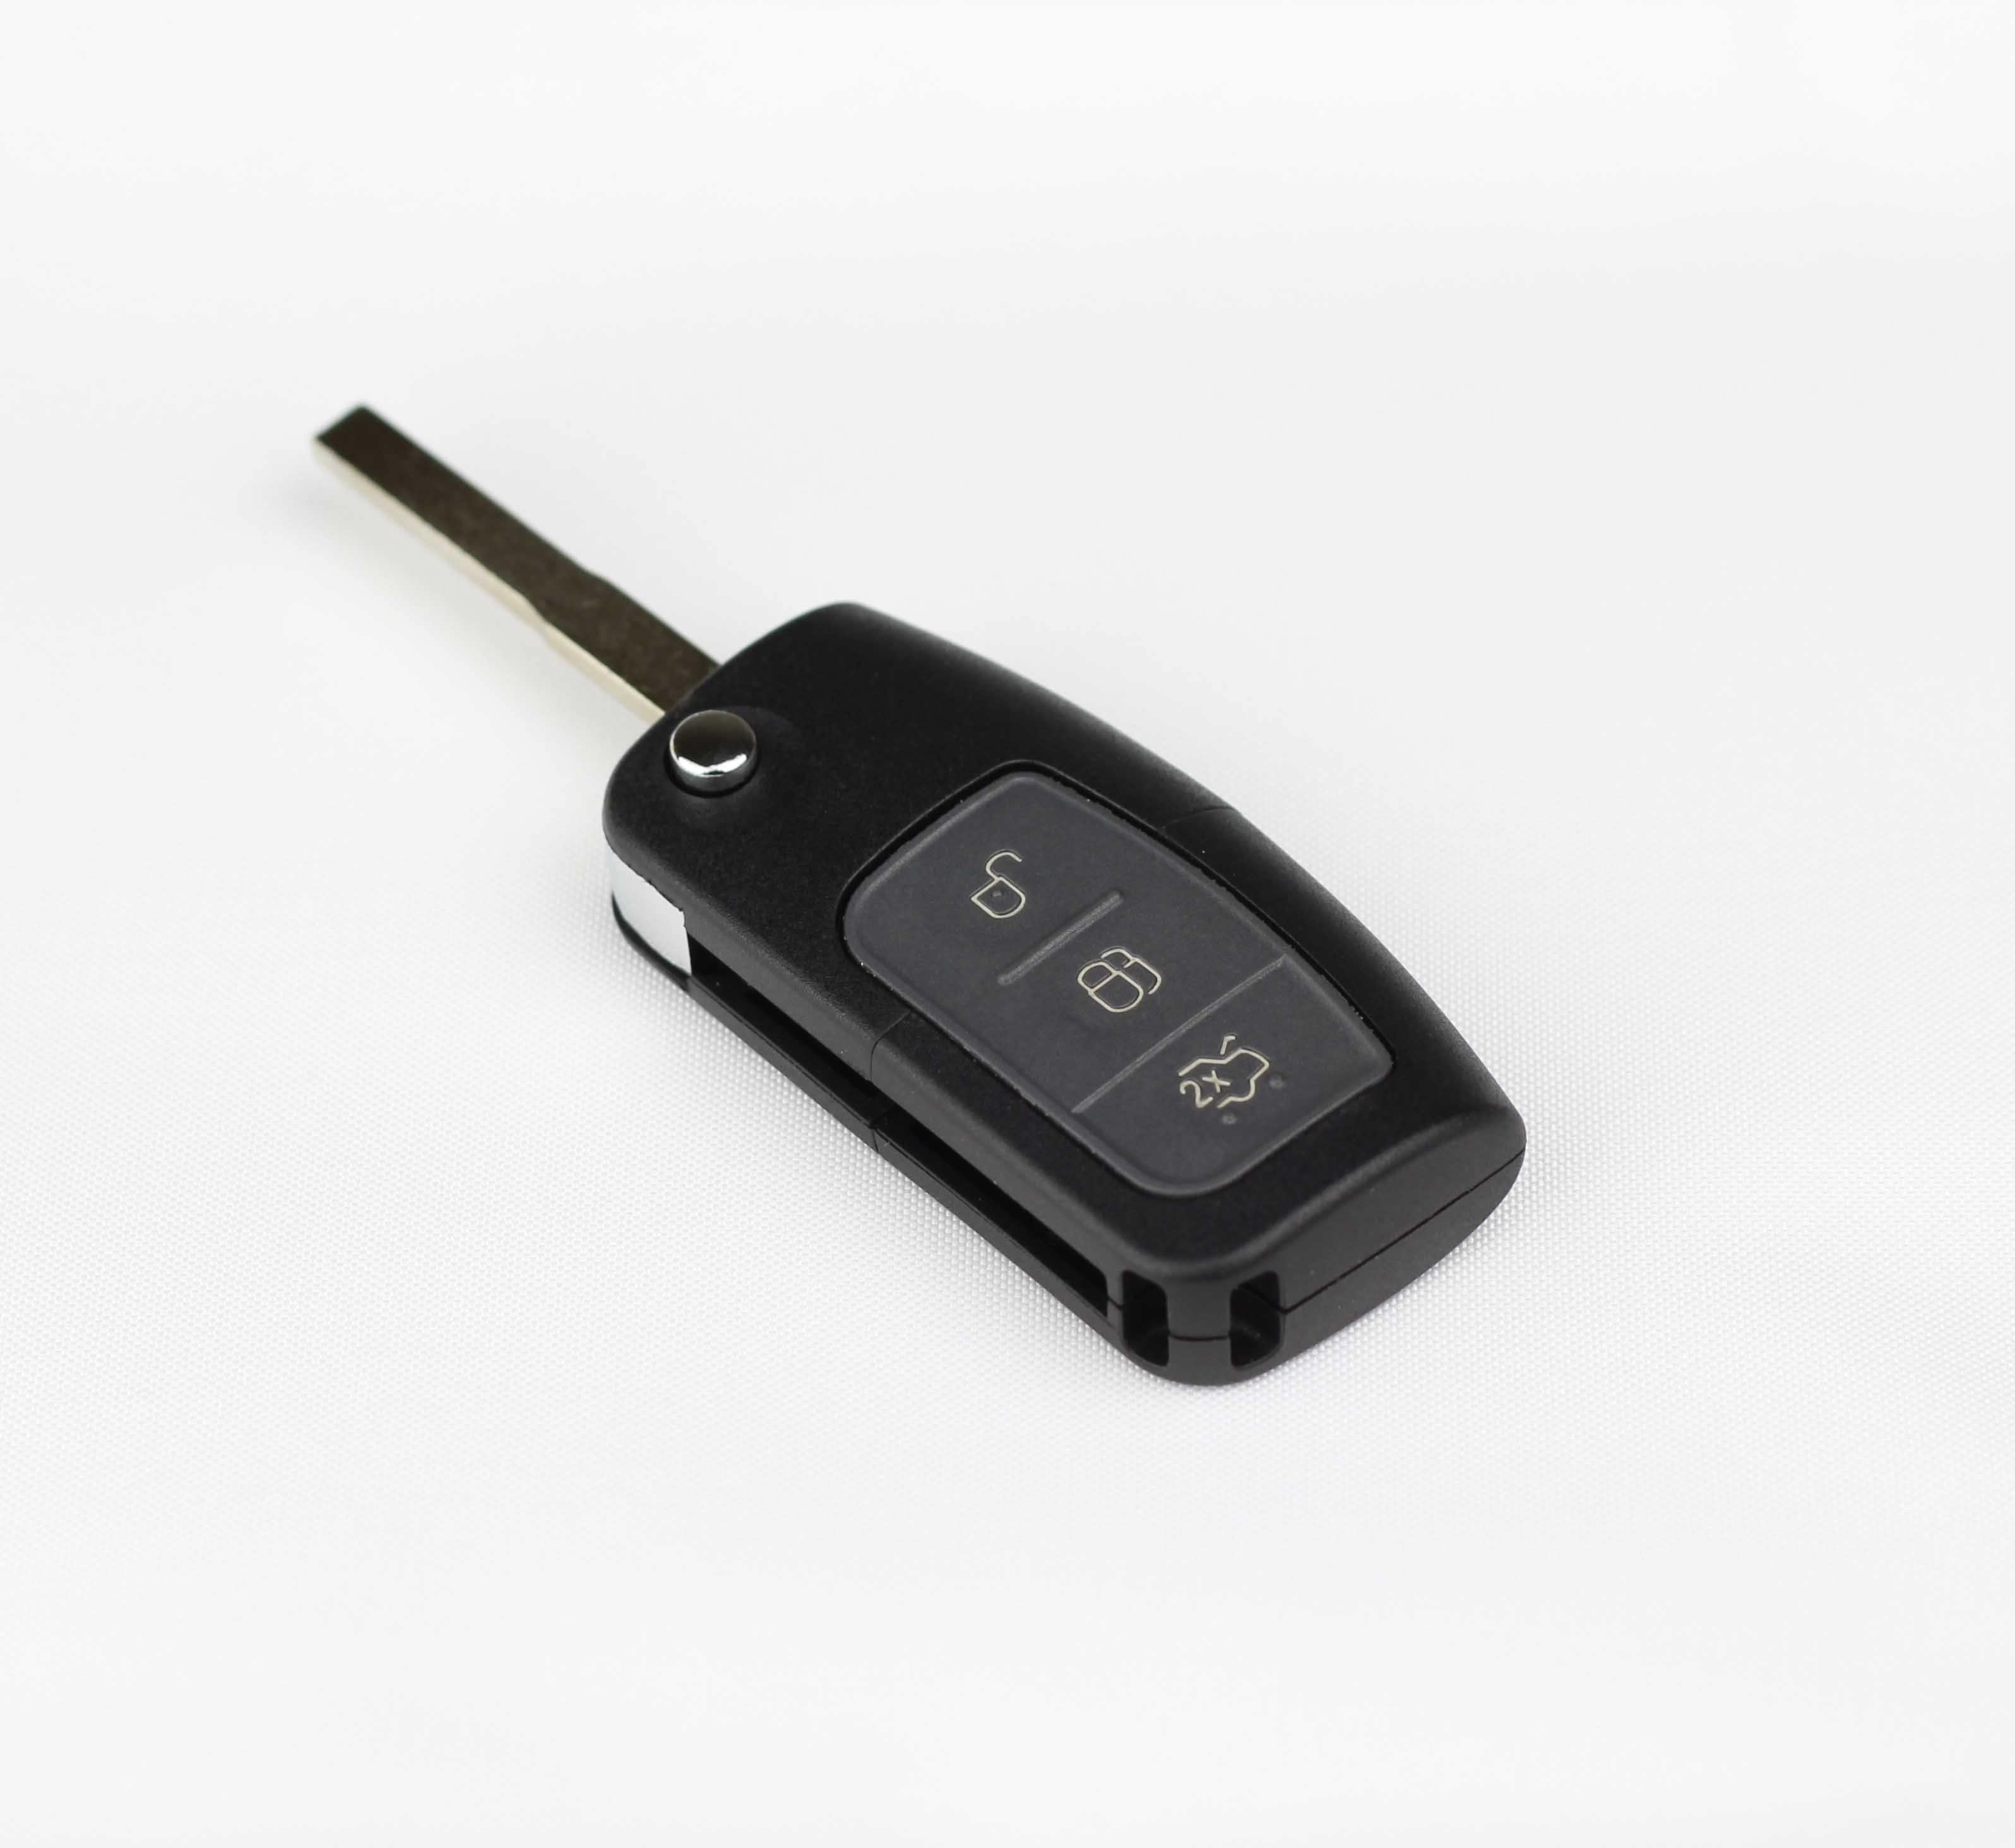 Fekete színű, 3 gombos Ford kulcs, bicskakulcs HU101 kulcsszárral.